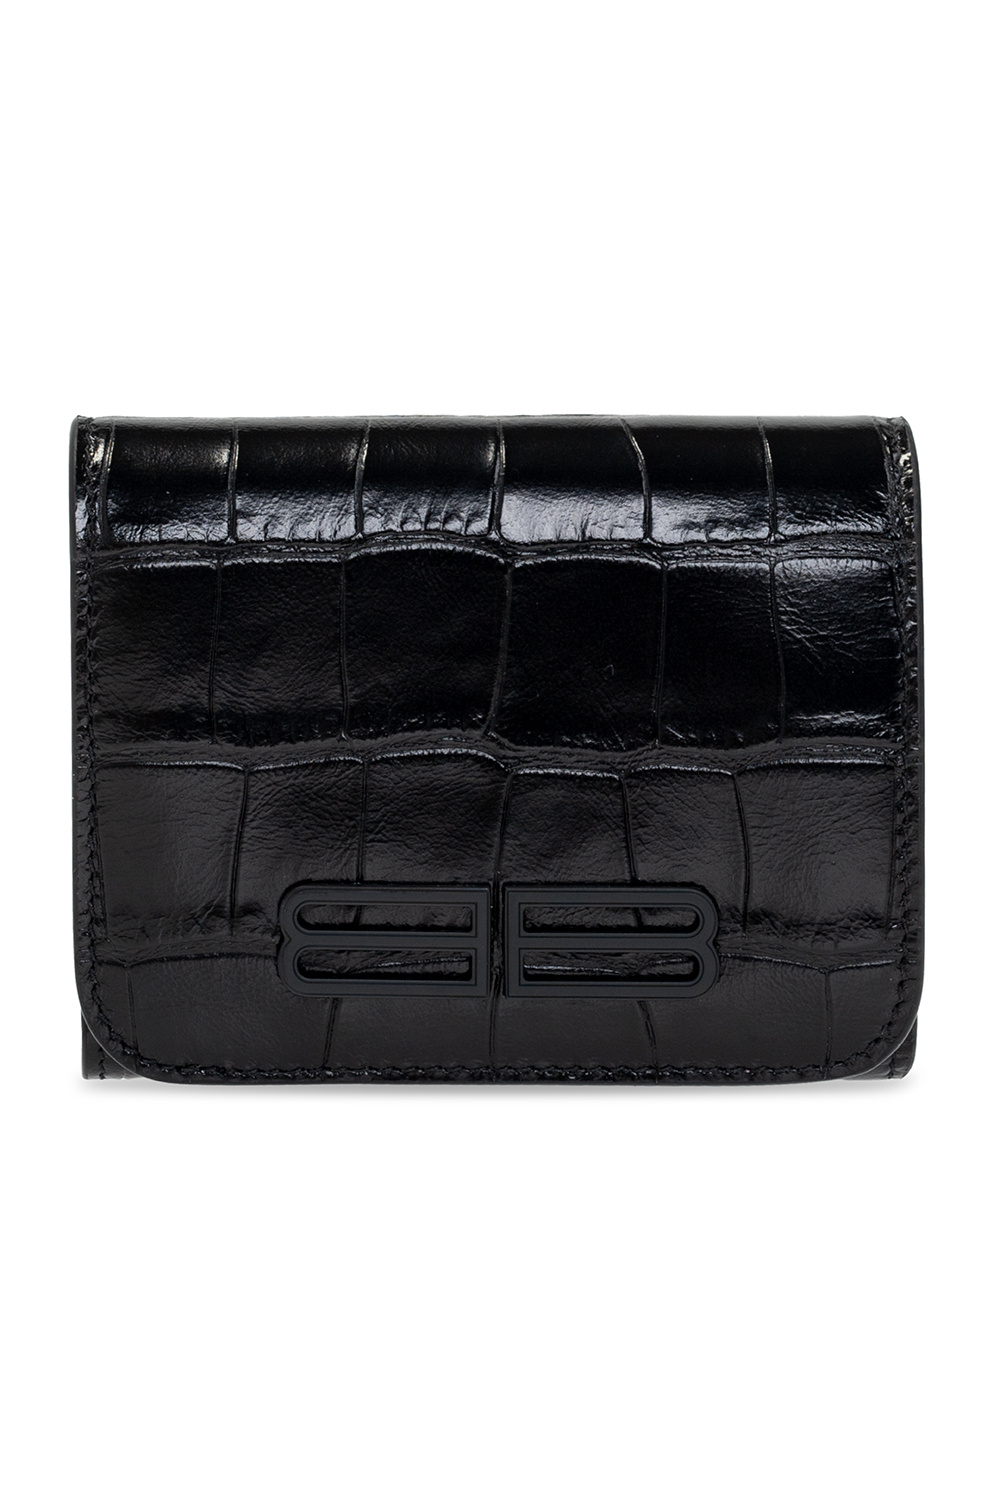 Balenciaga Folding wallet